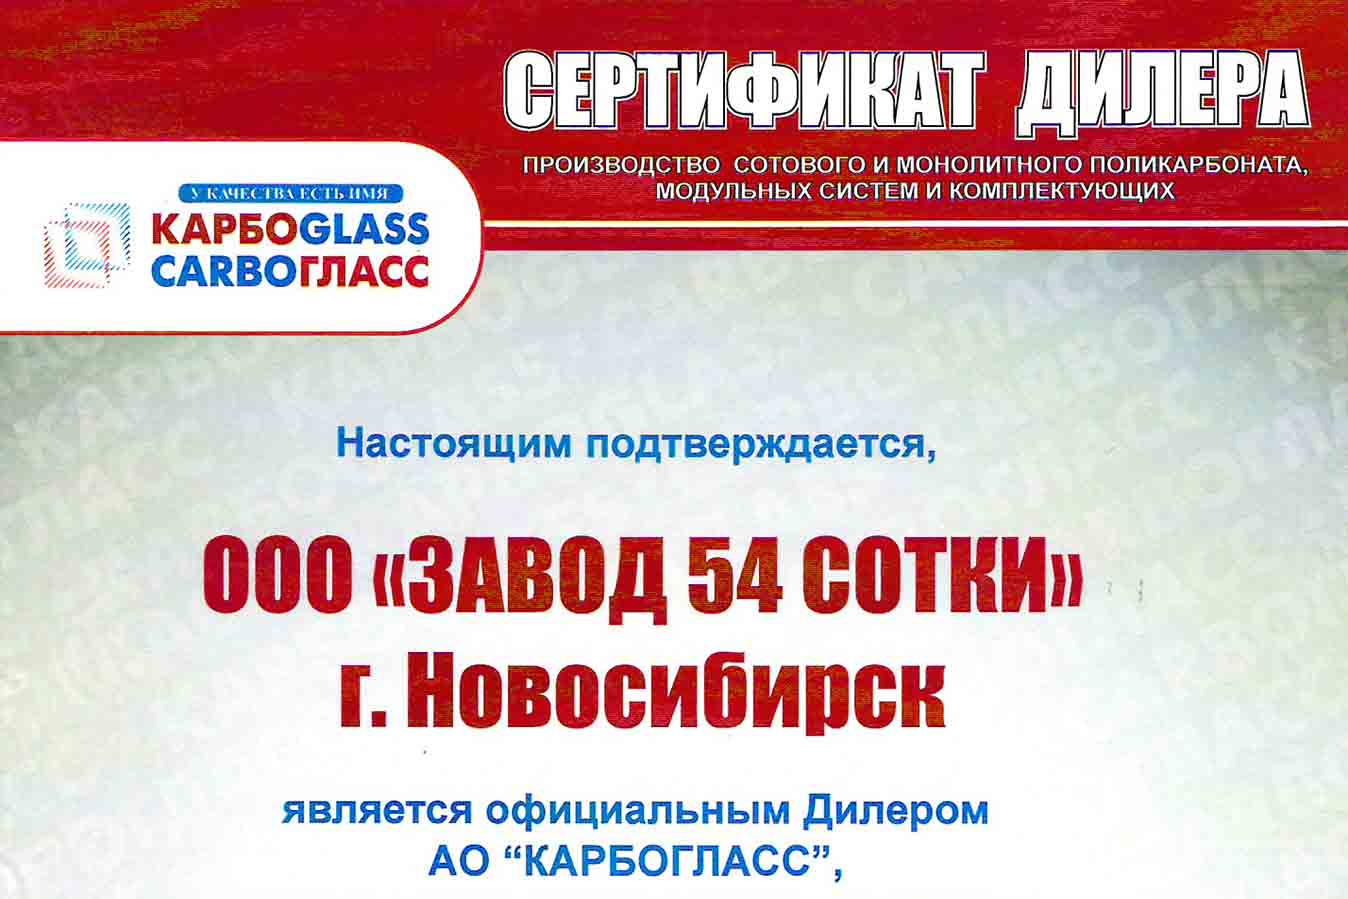 С 2018 года ООО "Завод 54 Сотки" является официальным дилером продукции завода «КАРБОГЛАСС».